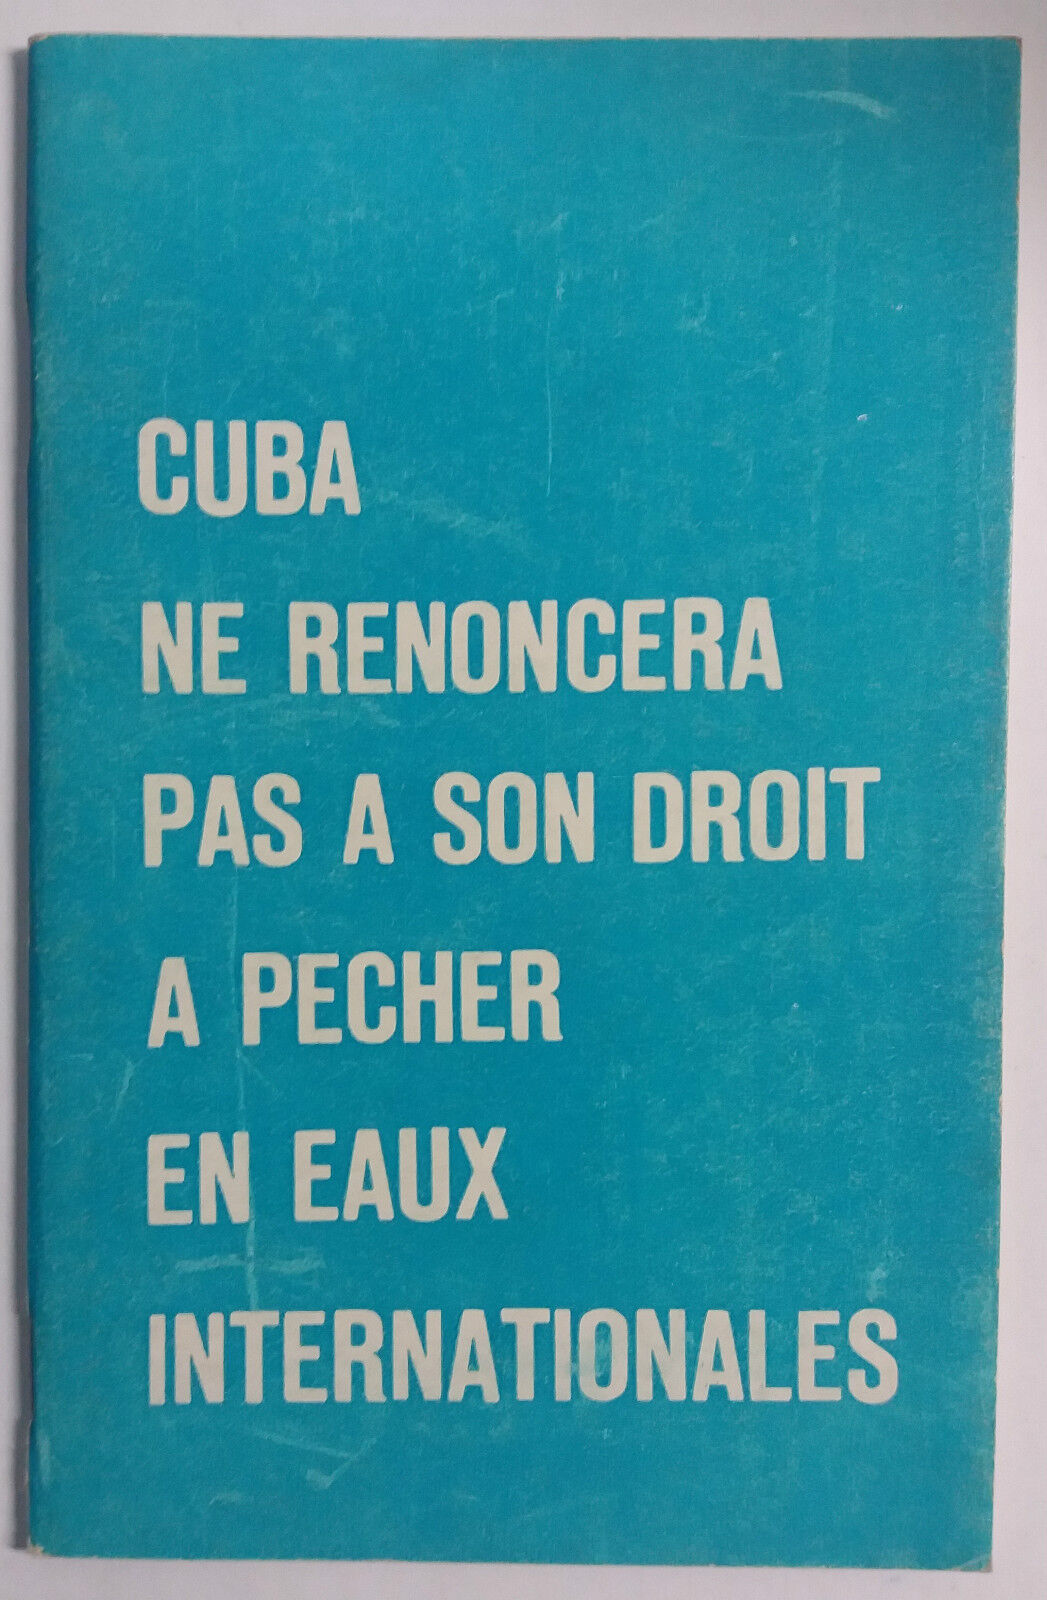 Cuba ne renoncera a son [...] - Fidel Castro - Editions Politiques - 1971 - G